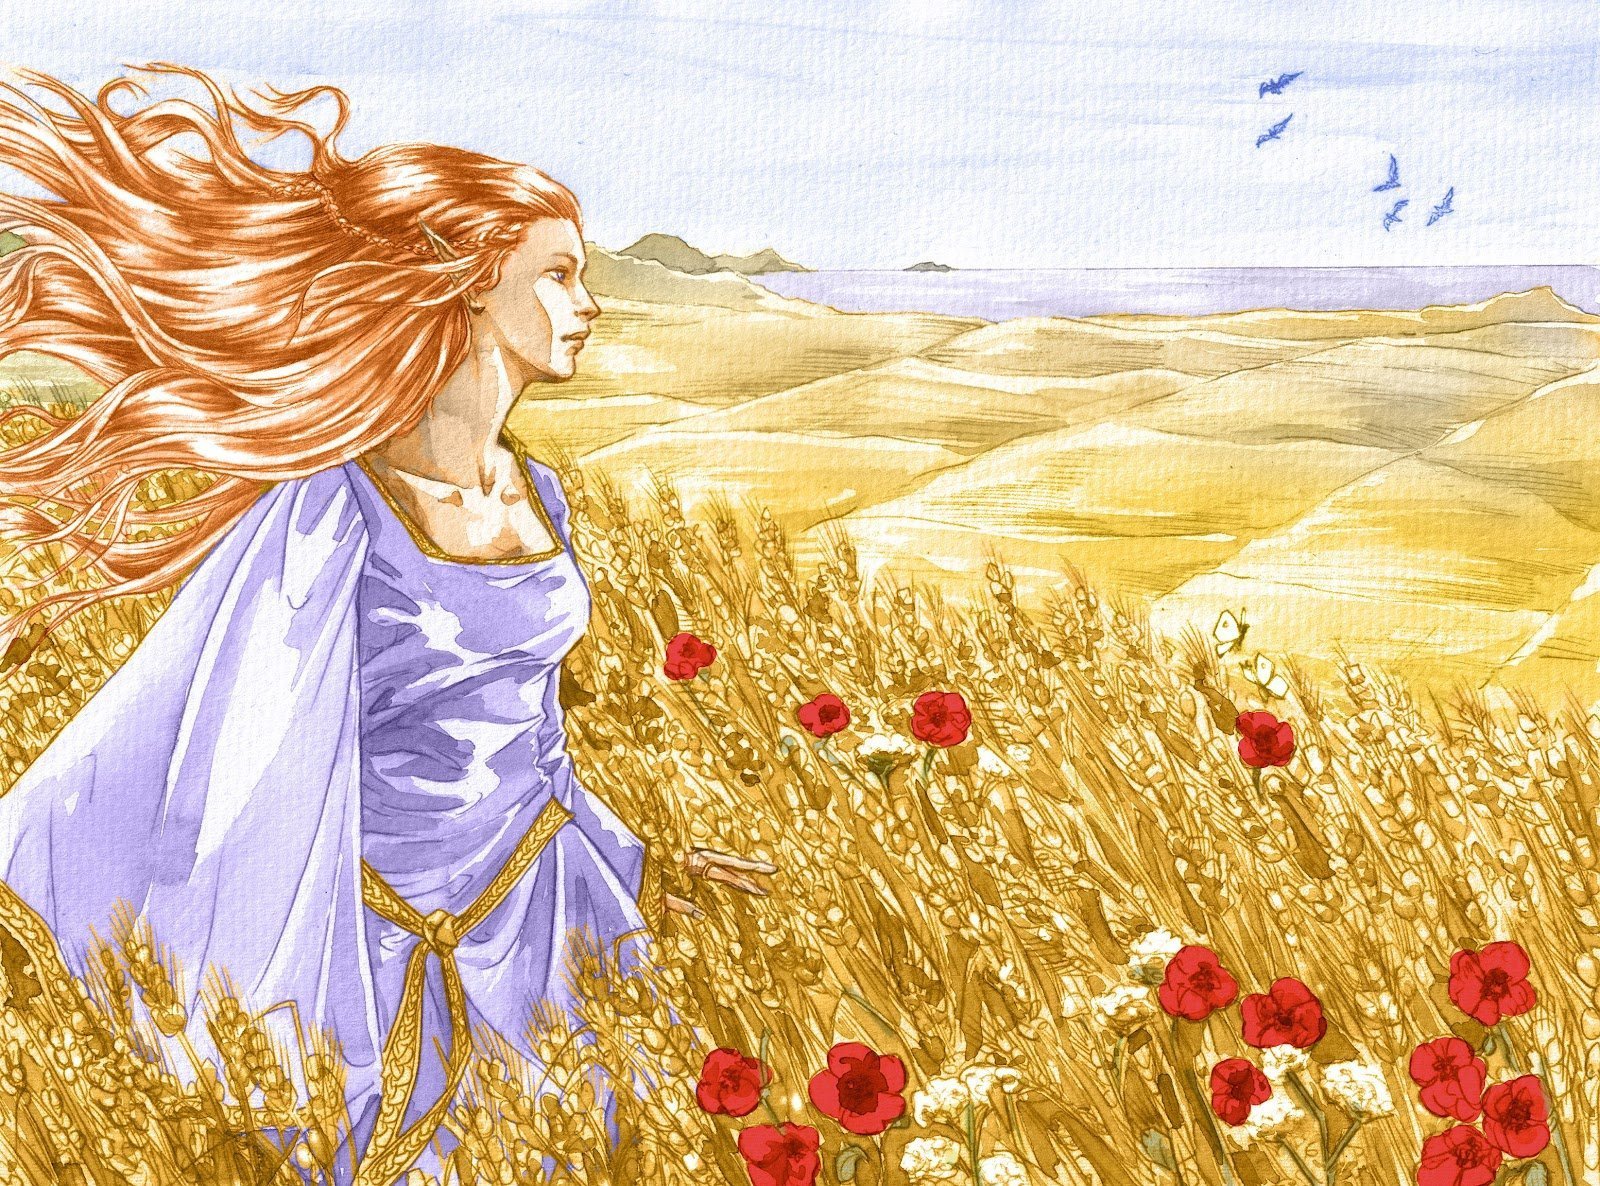 Произведения о мать природа. ЛАММАС Лугнасад. Девушка с волосами цвета льна. Девушка в поле. Девица в поле с золотыми волосами.